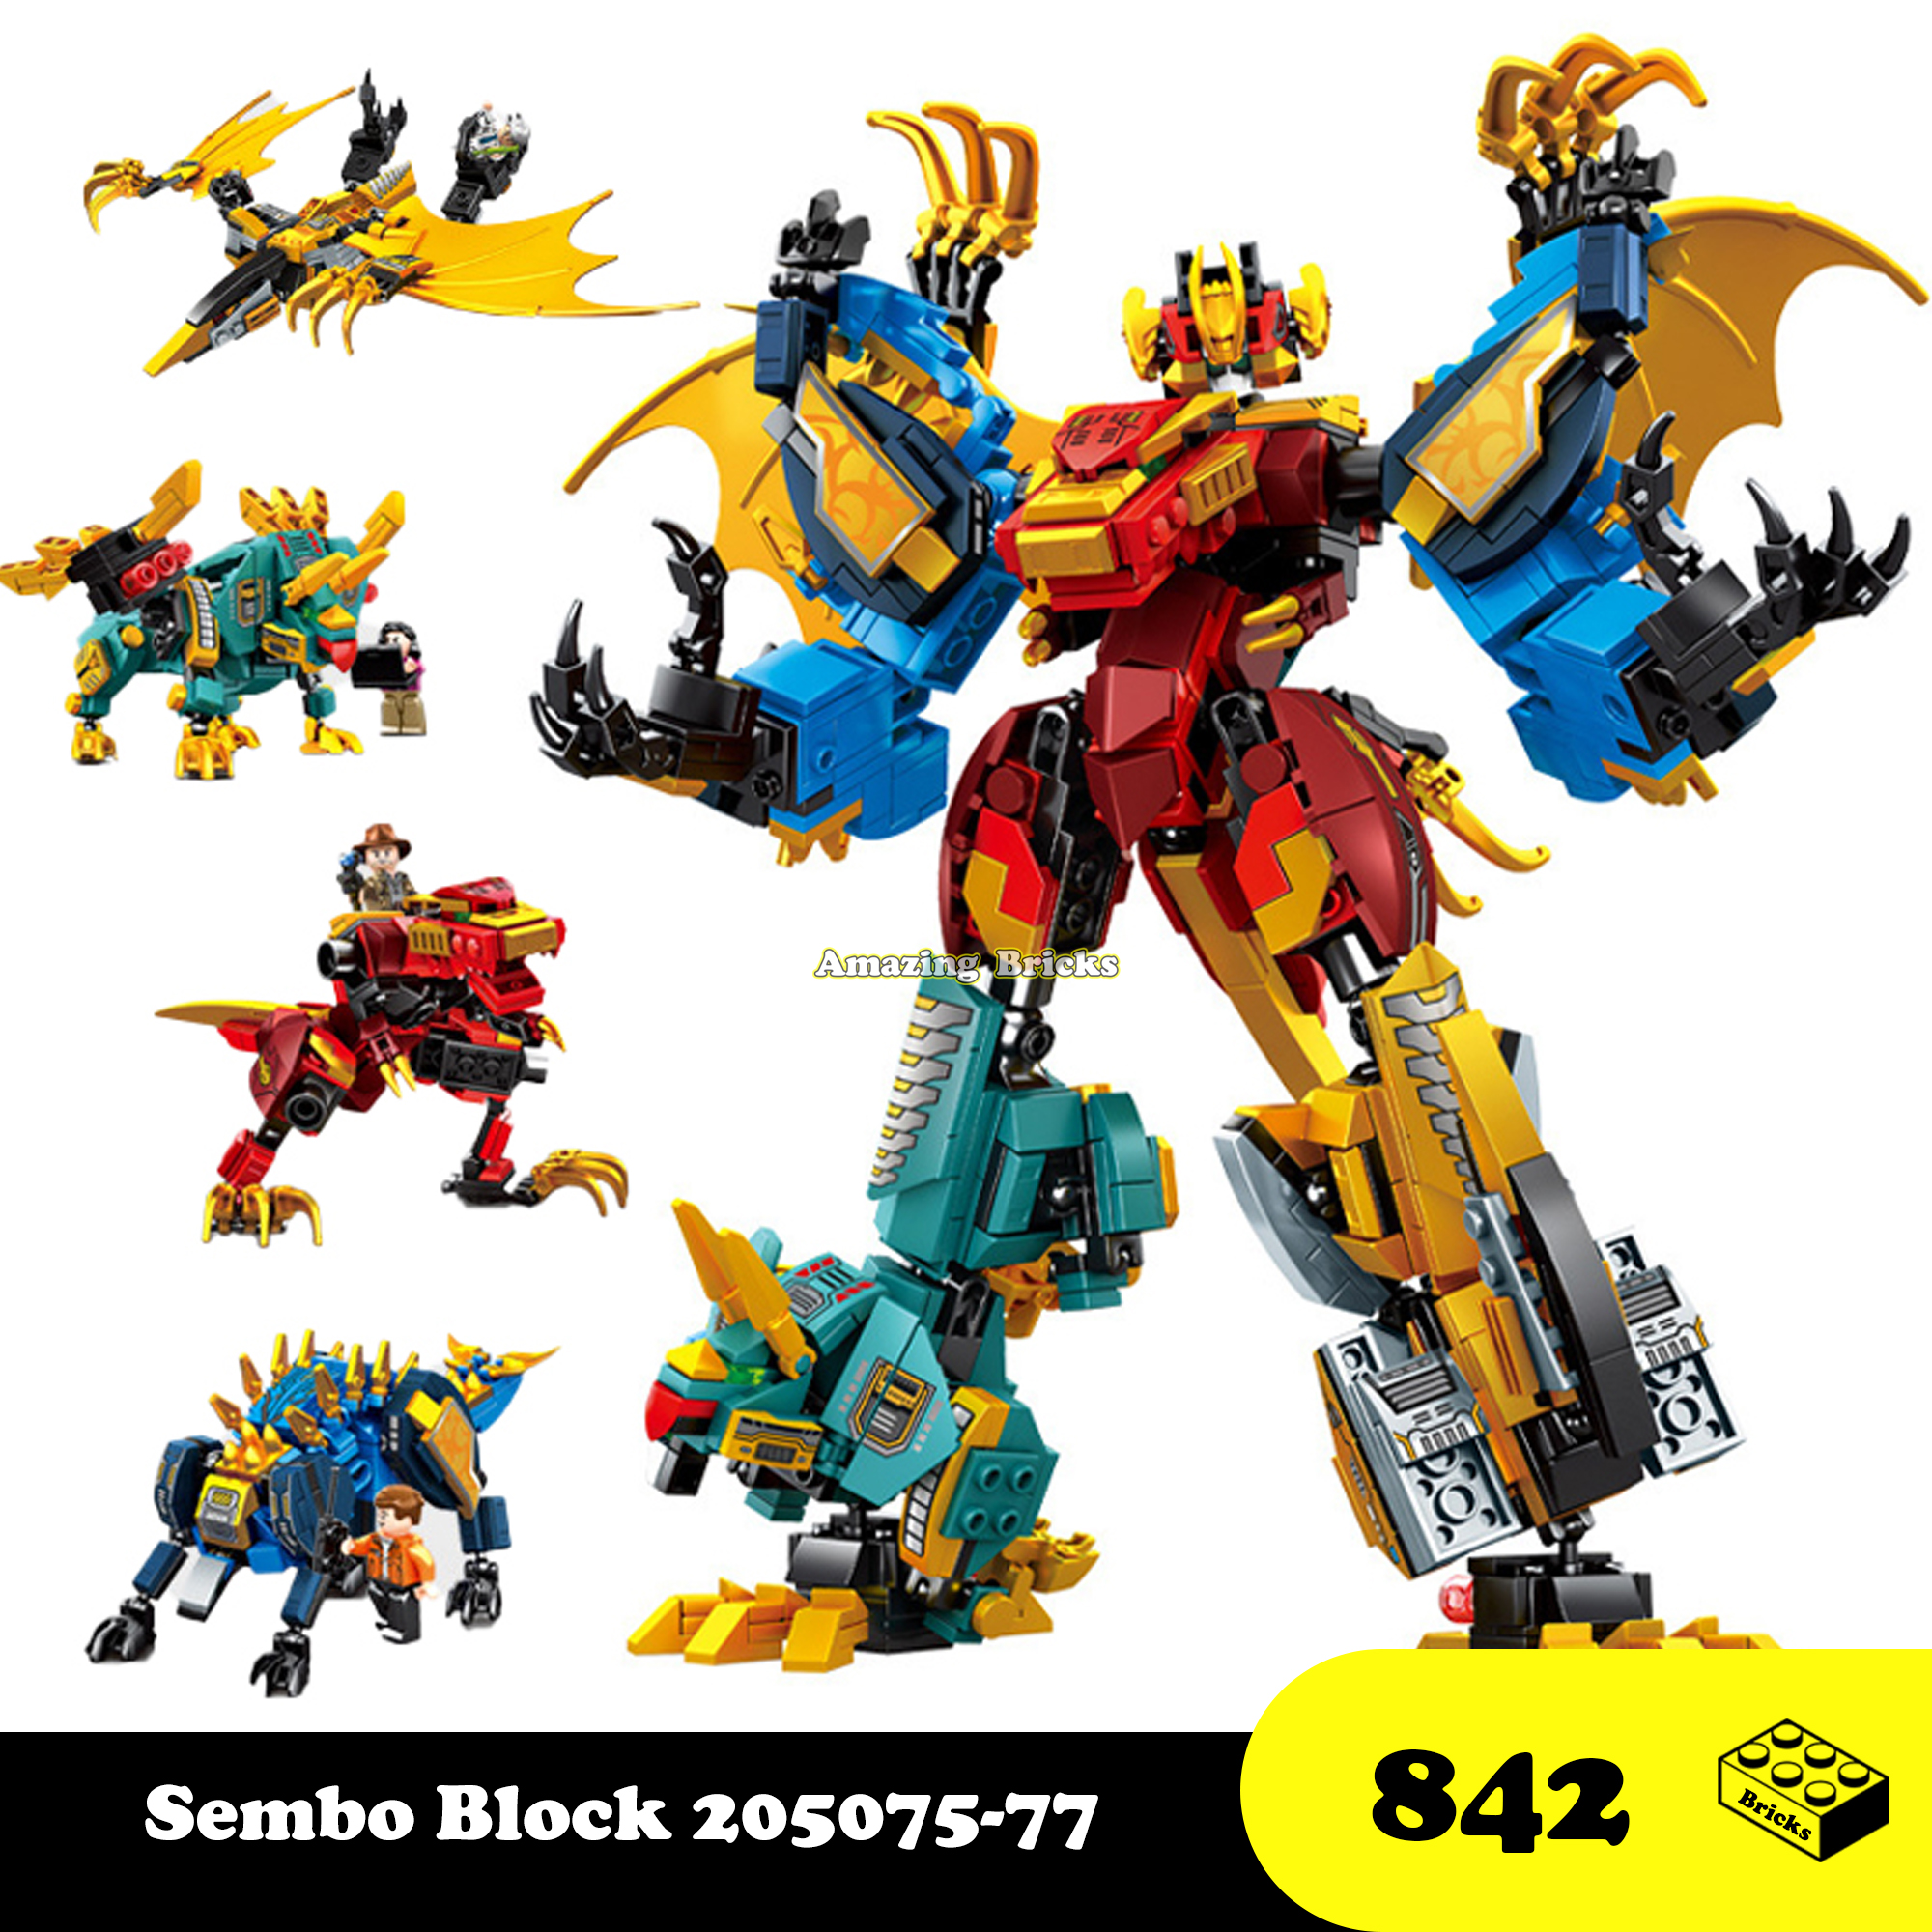 Đồ chơi Lắp ráp Robot Khủng long cổ đại bộ 4 hộp Sembo Block 205074-77 Dinosaur Xếp hình thông minh [842 Mảnh ghép]